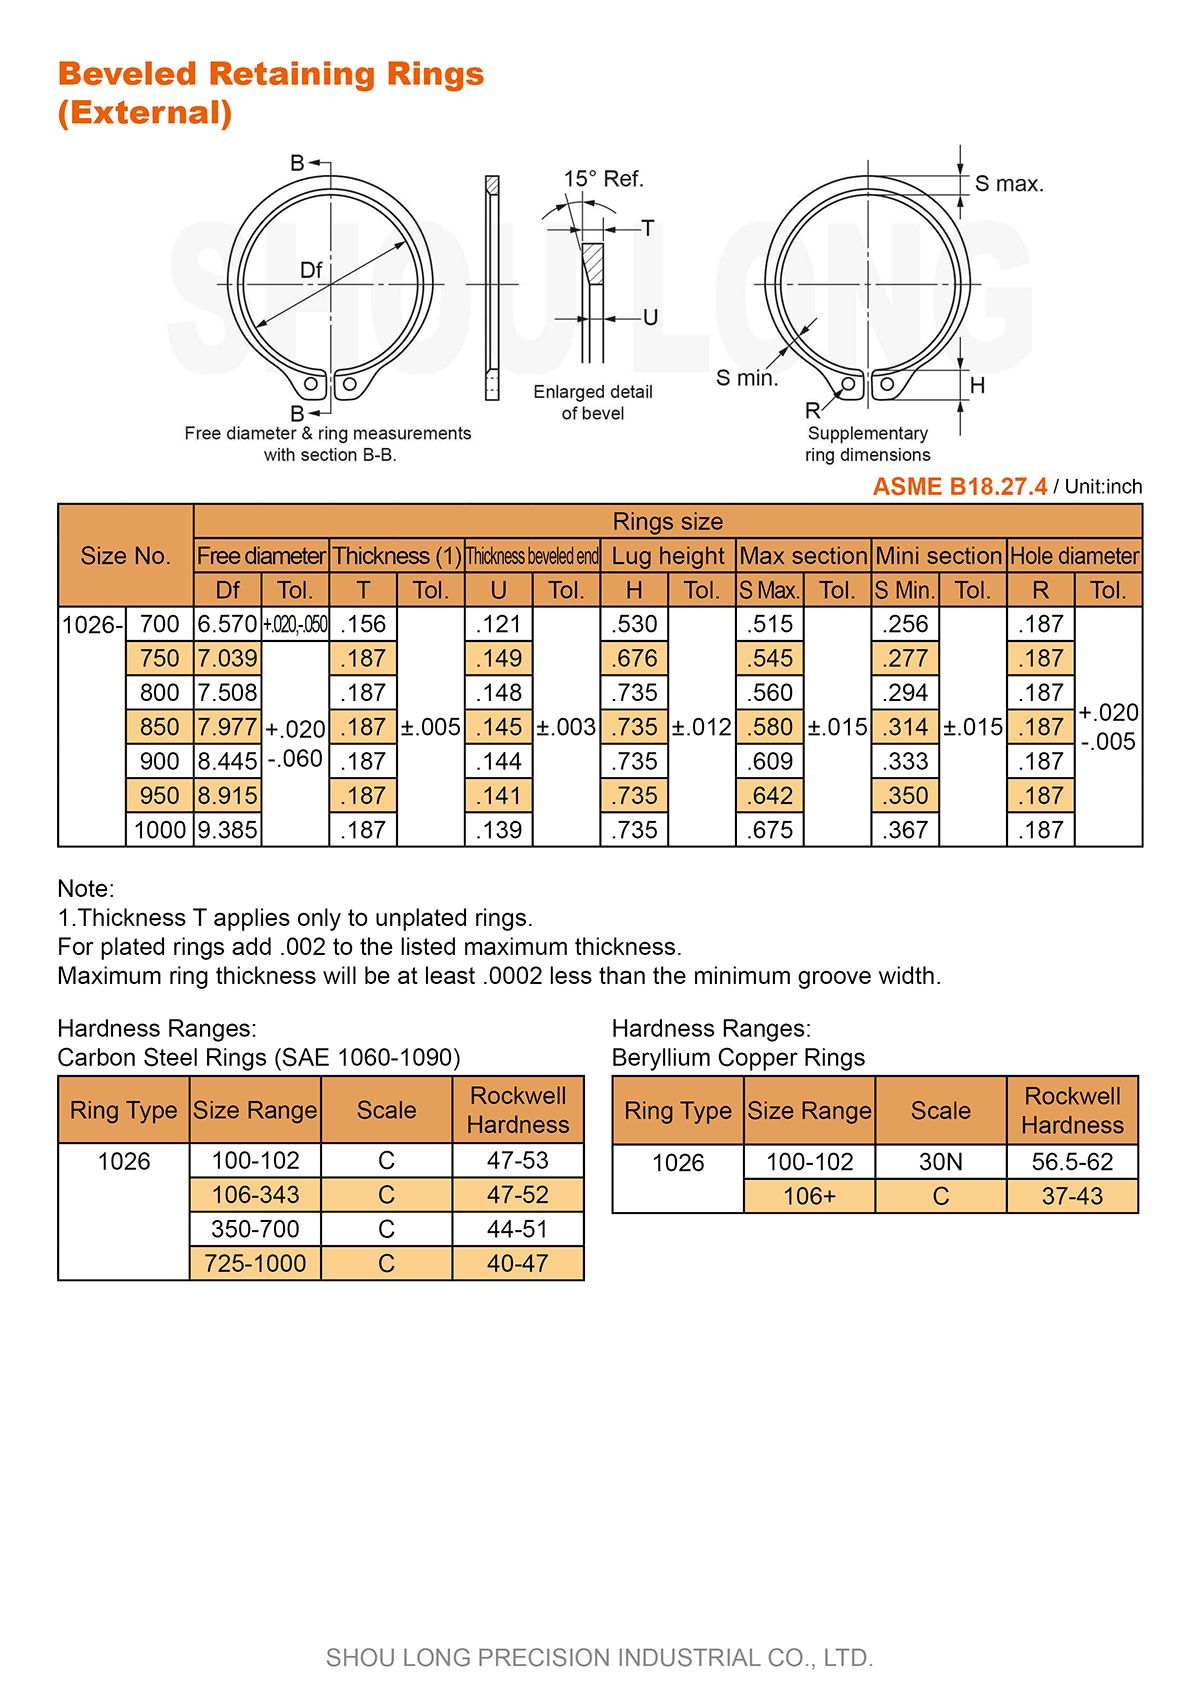 Спецификация дюймовых скосных удерживающих колец для вала ASME/ANSI B18.27.4-3